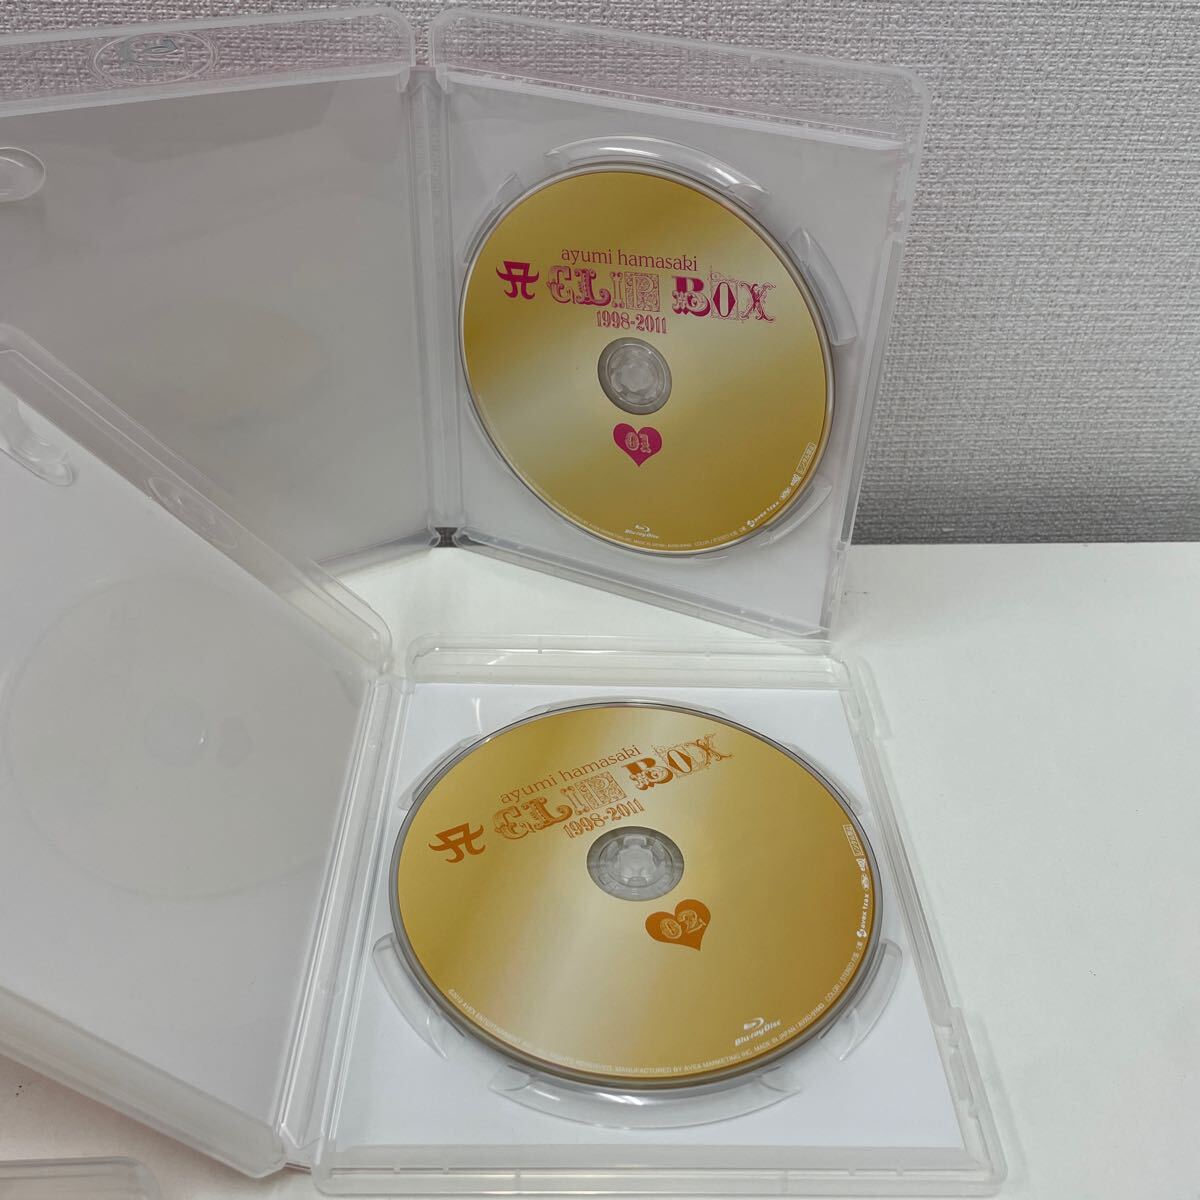 [1 иен старт ] Hamasaki Ayumi ayumi hamazaki A CLIP BOX 1998-2011 Blu-ray4 листов комплект 